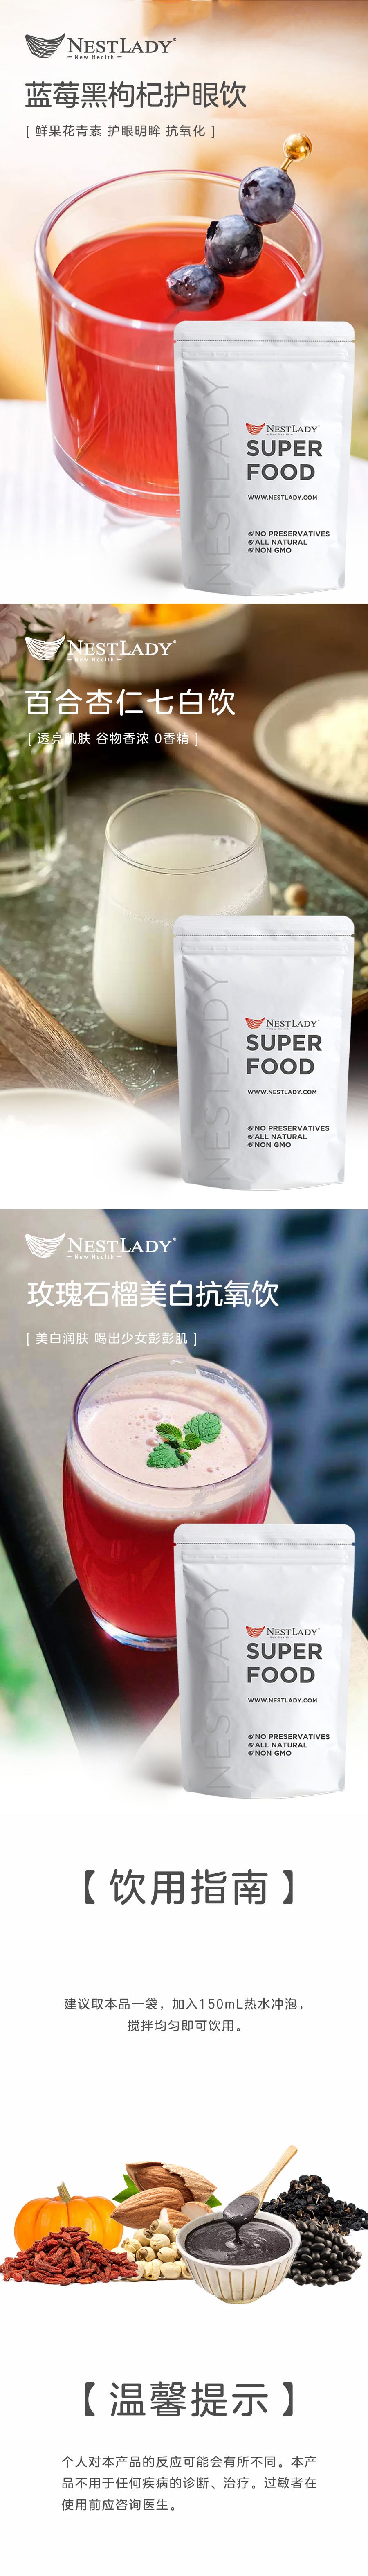 美國NestLady雍容燕窩 月子調理恢復 沖飲系列 滋補粉末茶 6款商品